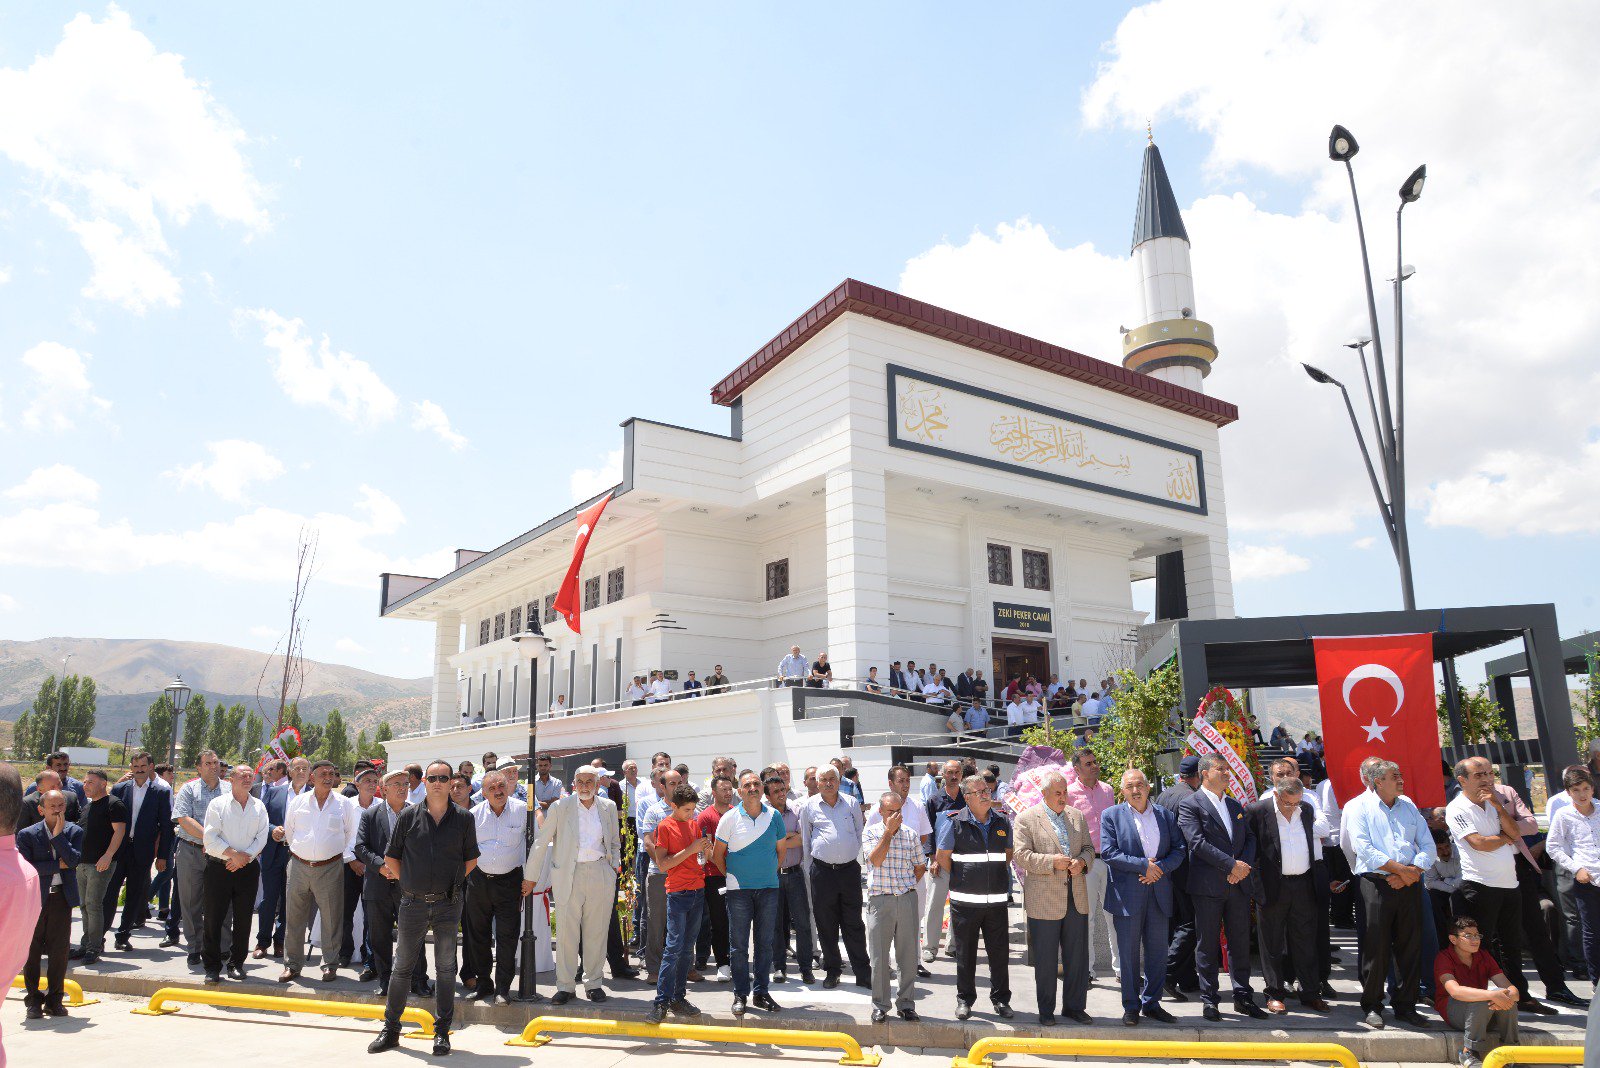 Bitlisli iş adamı Zeki Peker ile ağabeyi Hüsamettin Peker tarafından yapılan cami ve misafirhanenin açılışı gerçekleştirildi.
